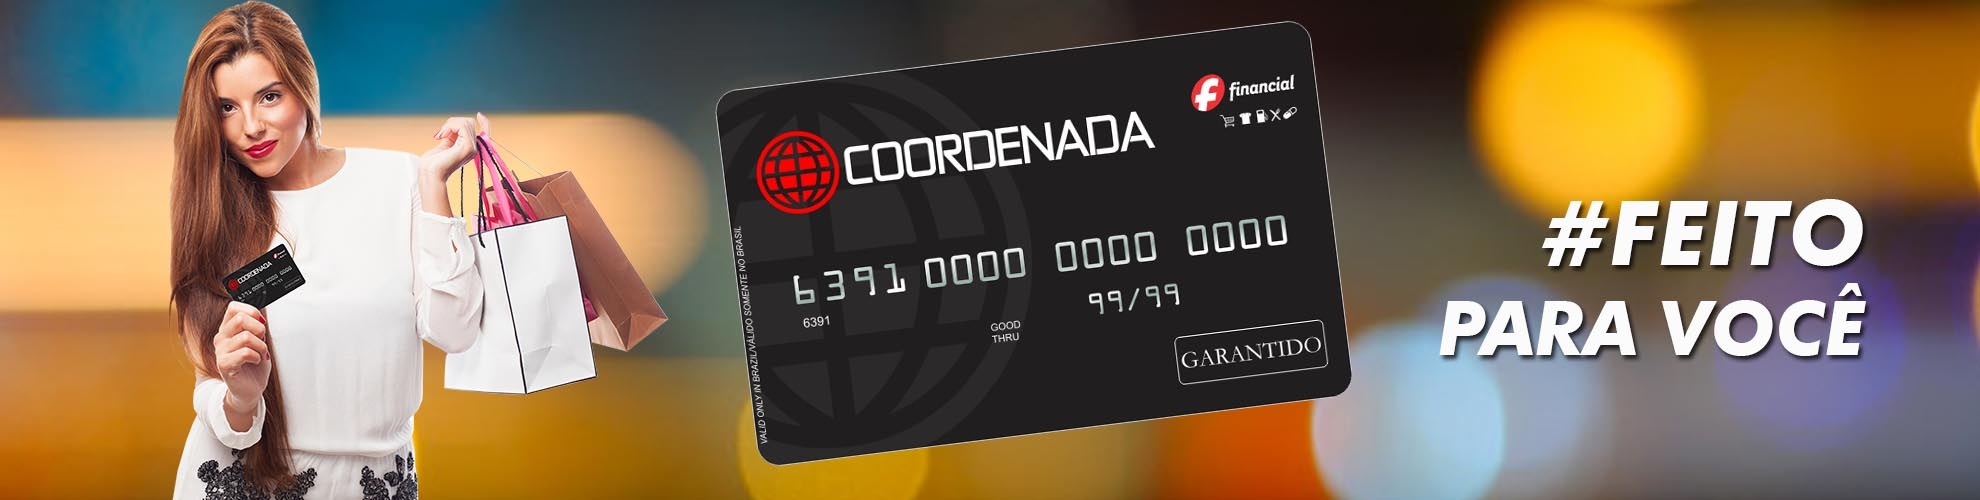 Cartão de Crédito Coordenada